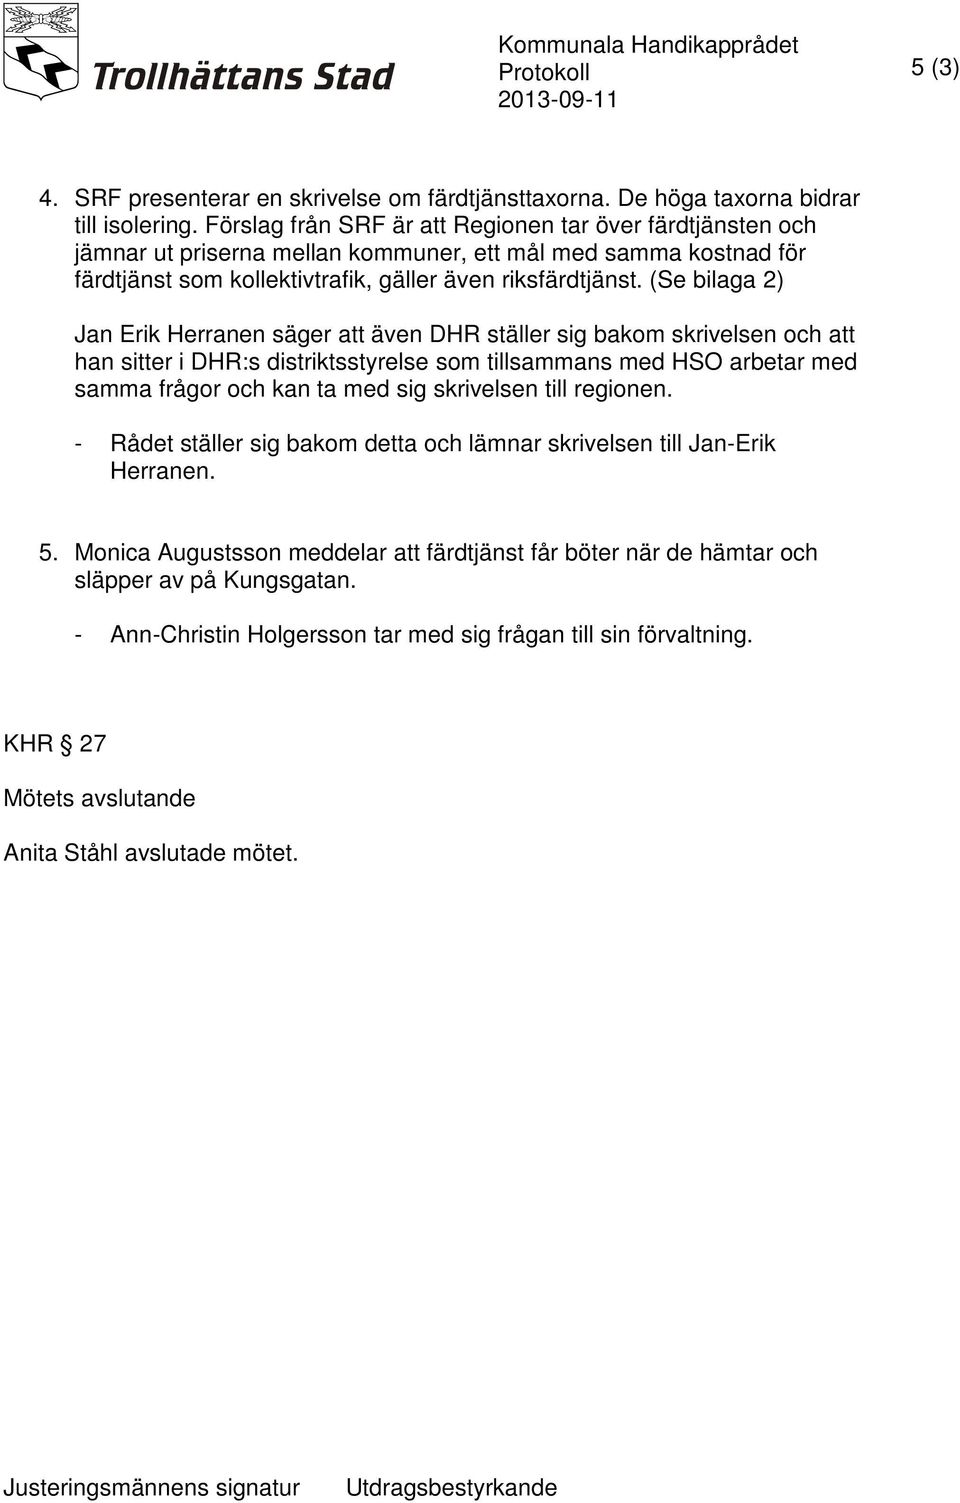 (Se bilaga 2) Jan Erik Herranen säger att även DHR ställer sig bakom skrivelsen och att han sitter i DHR:s distriktsstyrelse som tillsammans med HSO arbetar med samma frågor och kan ta med sig